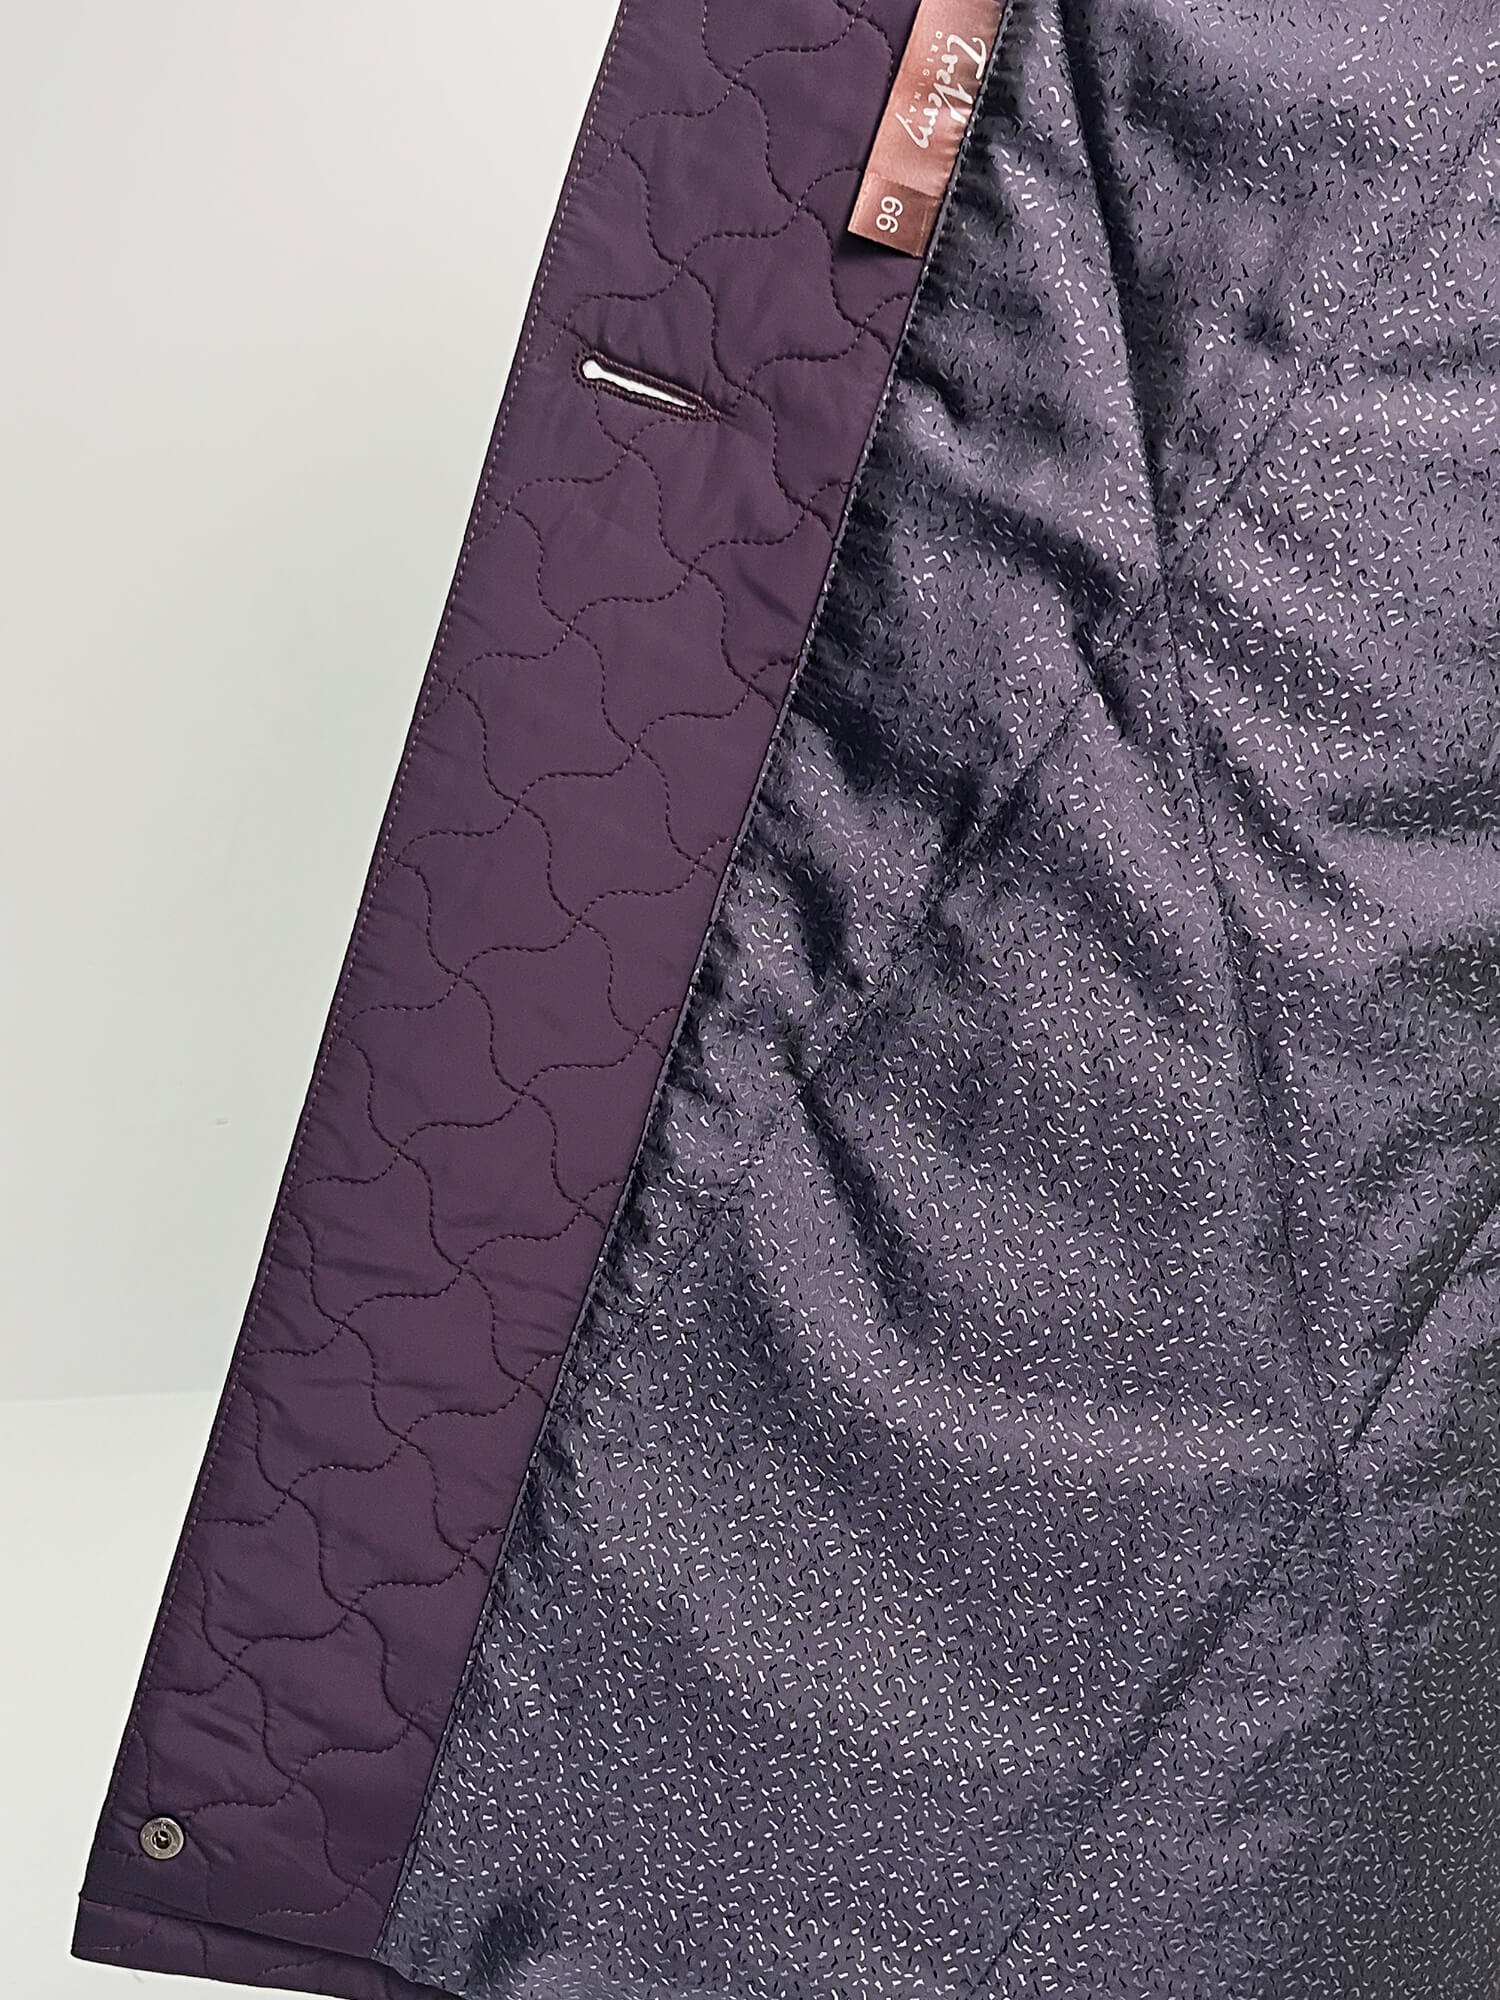 

Женское пальто Trevery/Тревери, Фиолетовый, Модель 90303 в цвете баклажан(фиолетовый)